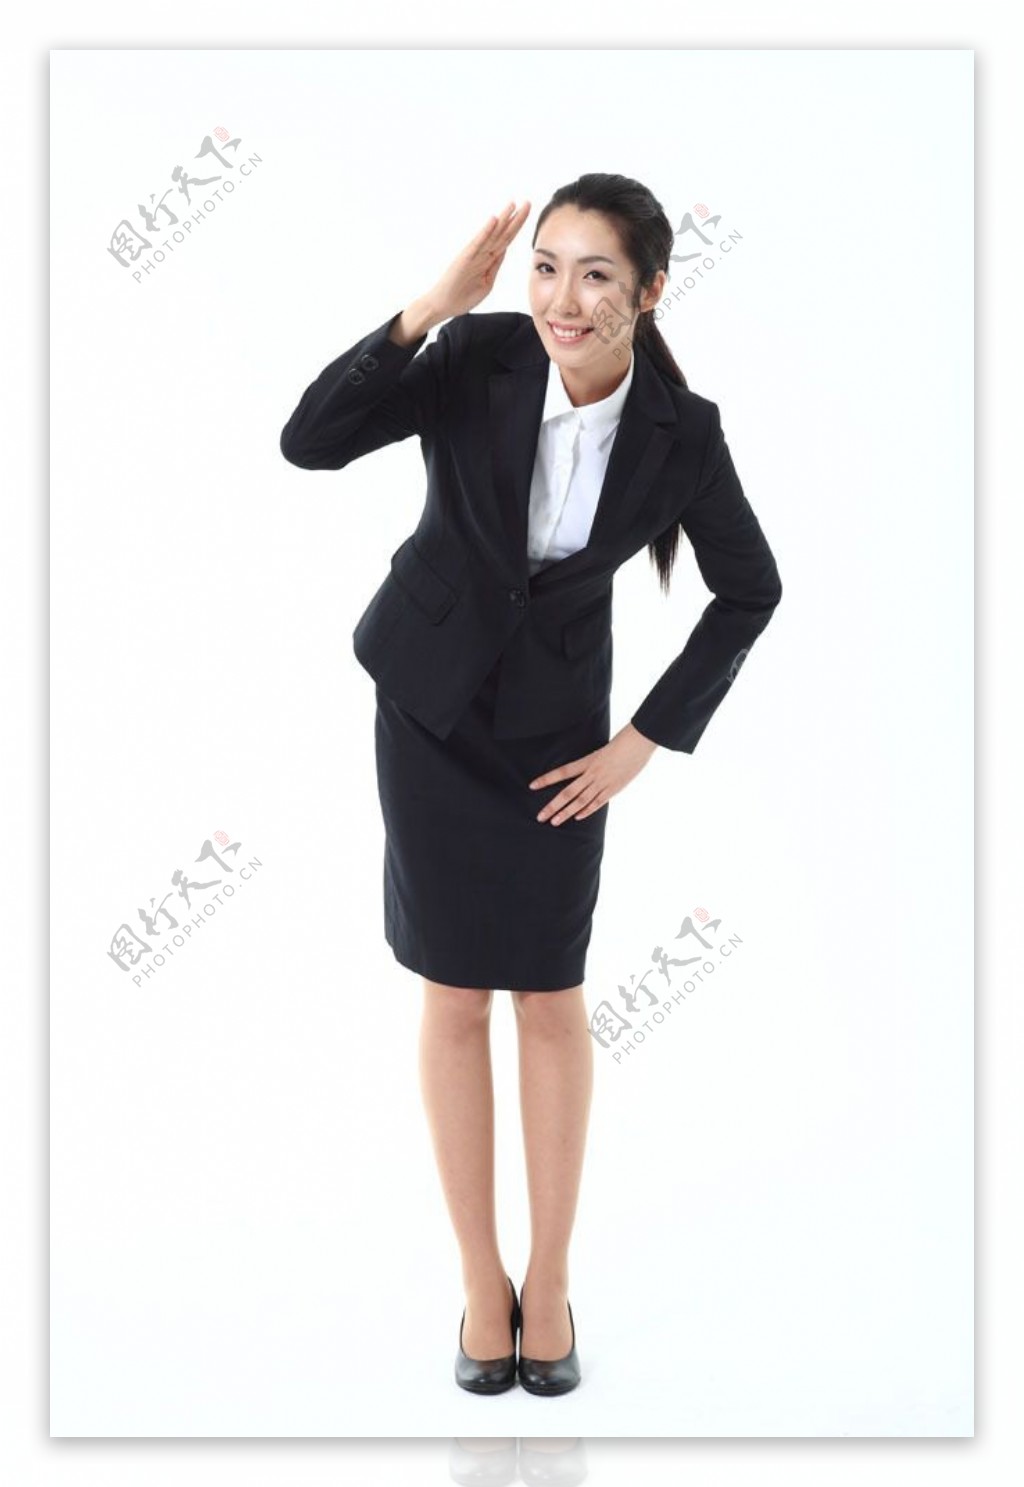 叉腰敬礼手势的商务女性图片